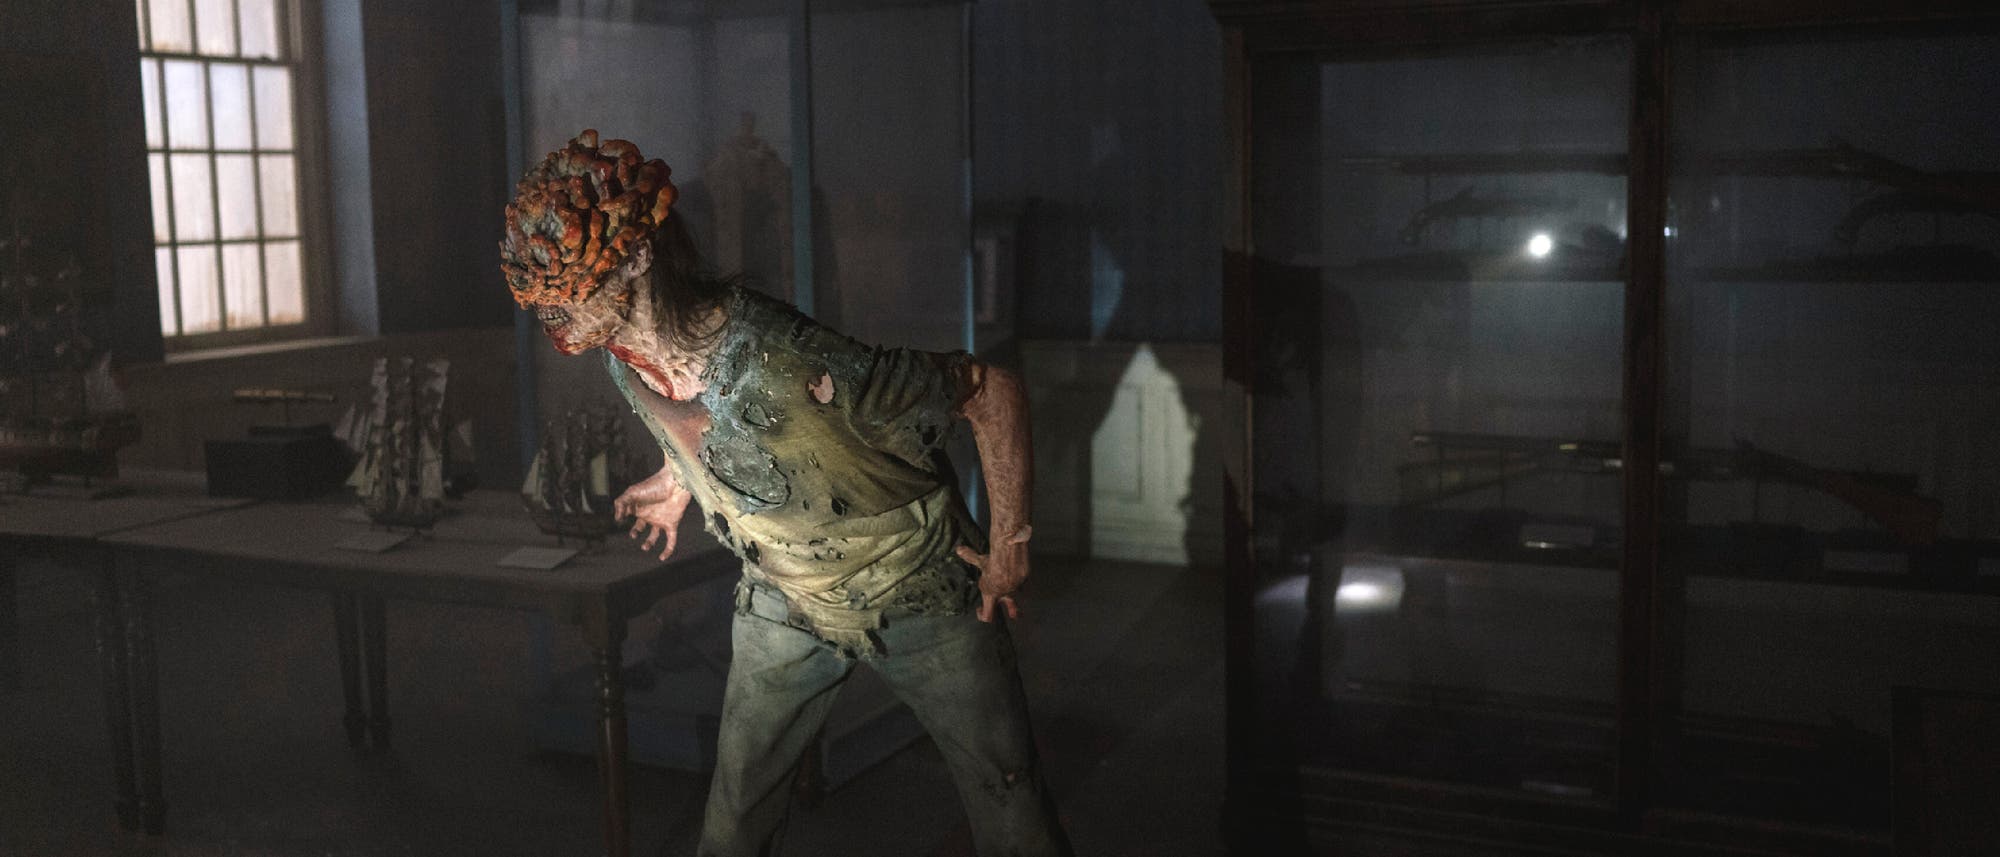 Ein Szenenbild aus der Fernsehserie "The Last of Us". Ein Infizierter sieht gefährlich aus.